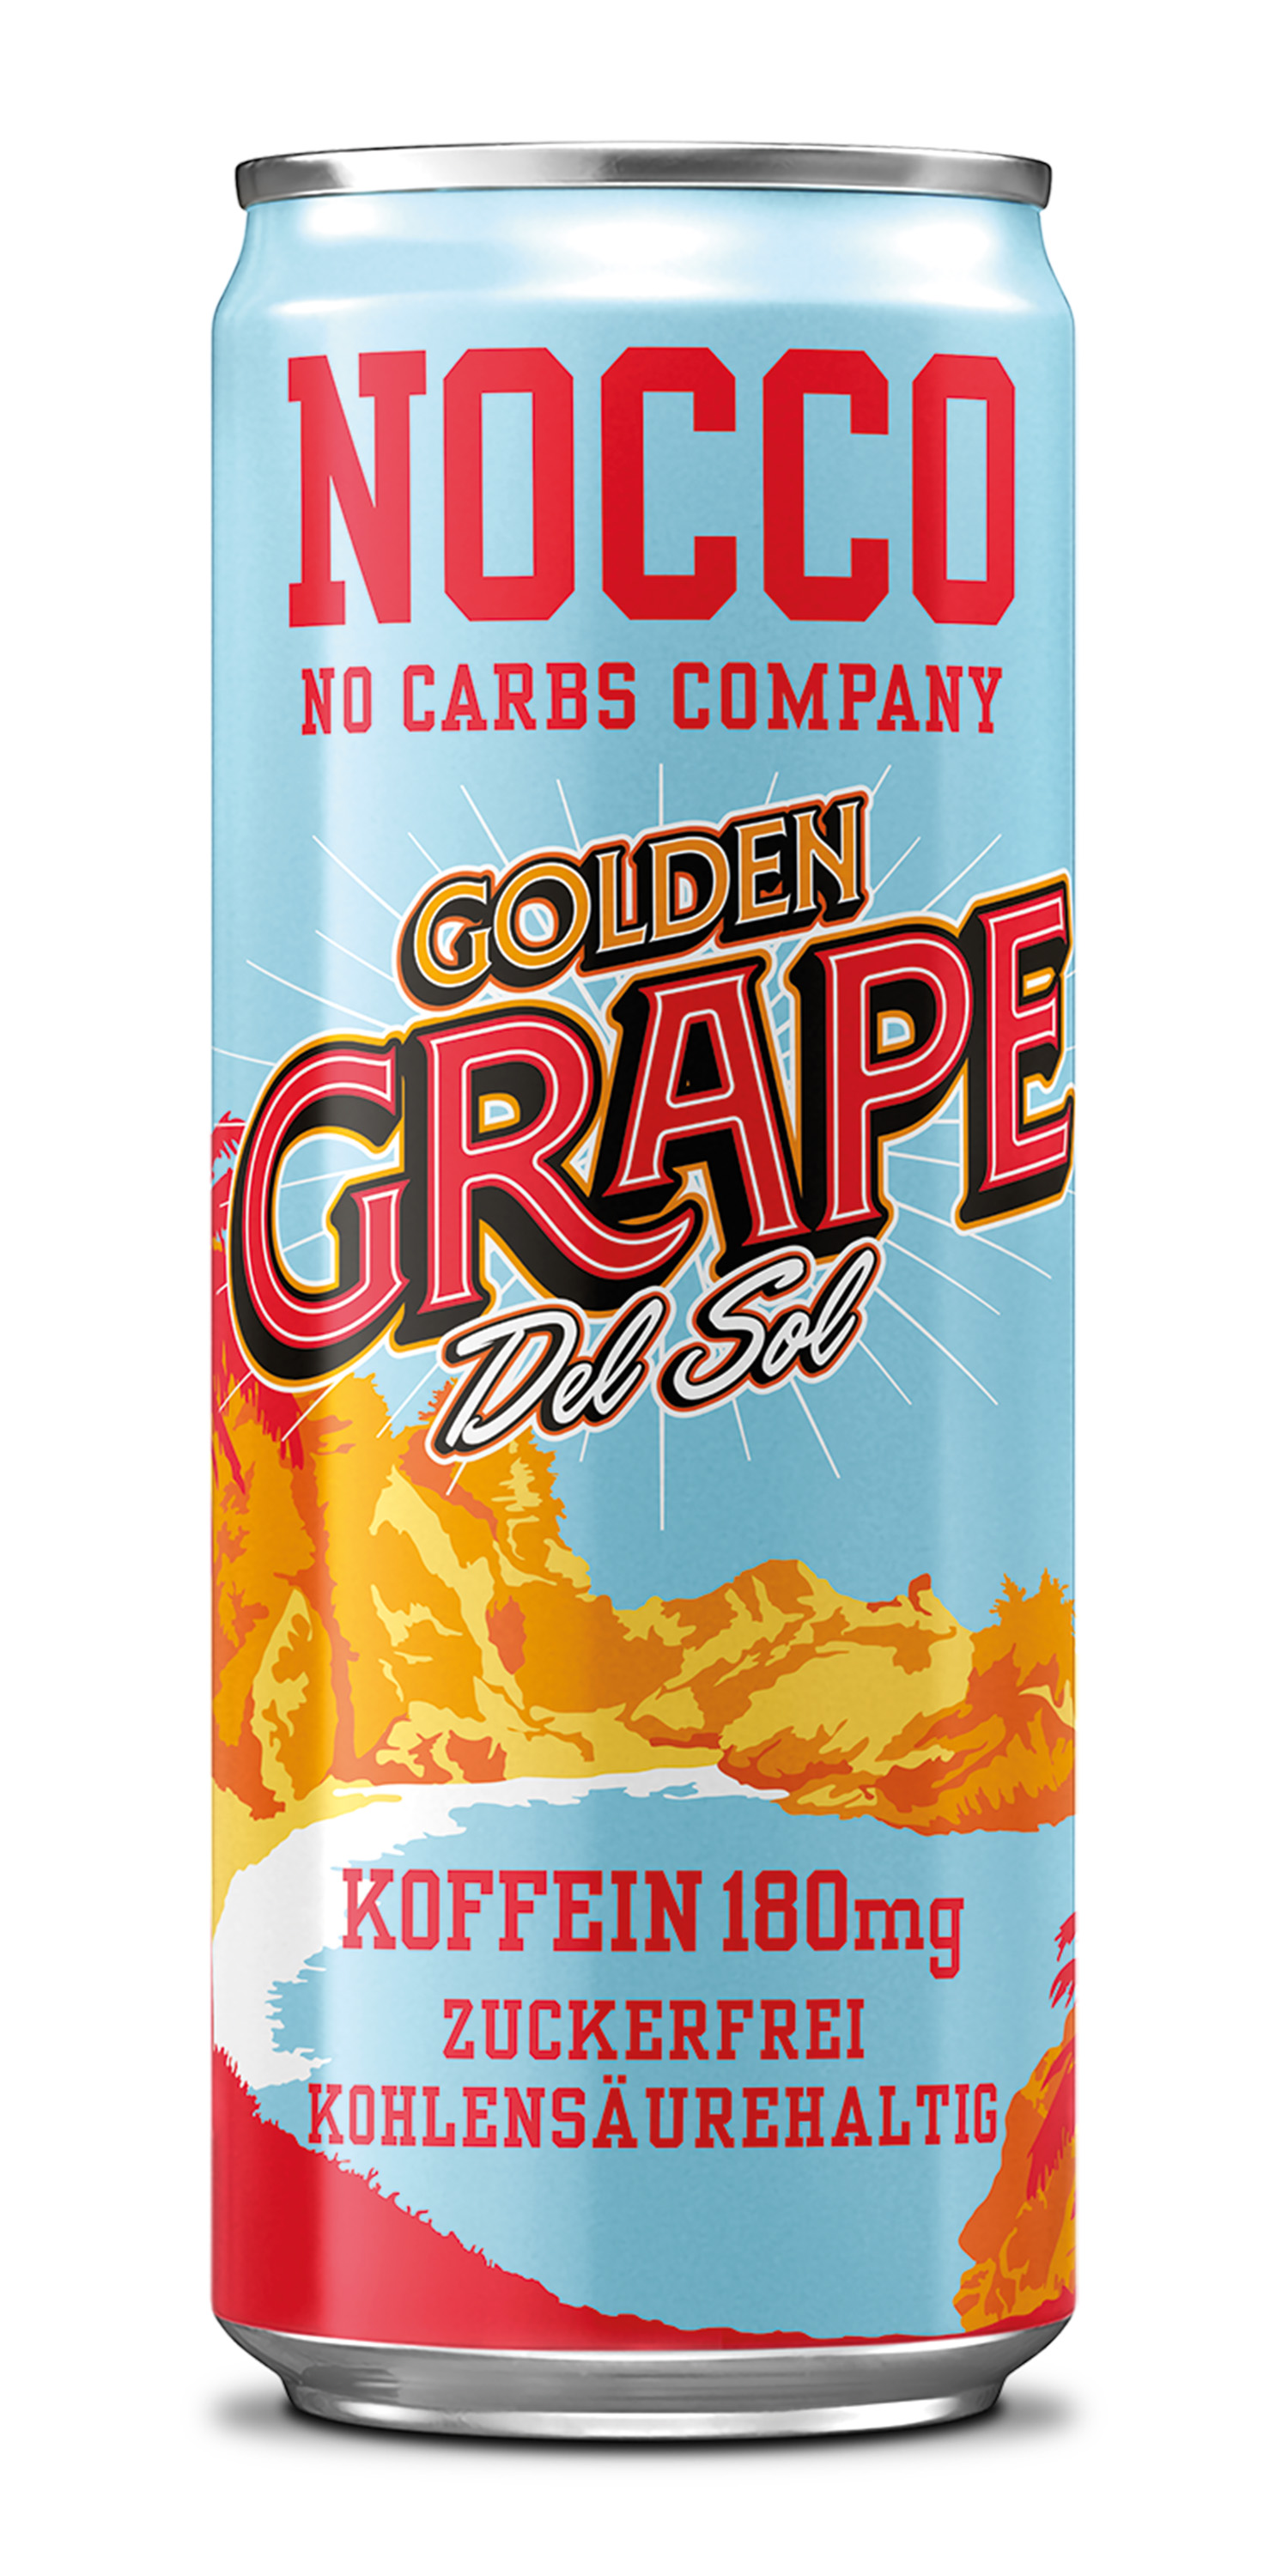 NOCCO BCAA Golden Grape del Sol *  Amstein SA - L'ambassadeur de la bière